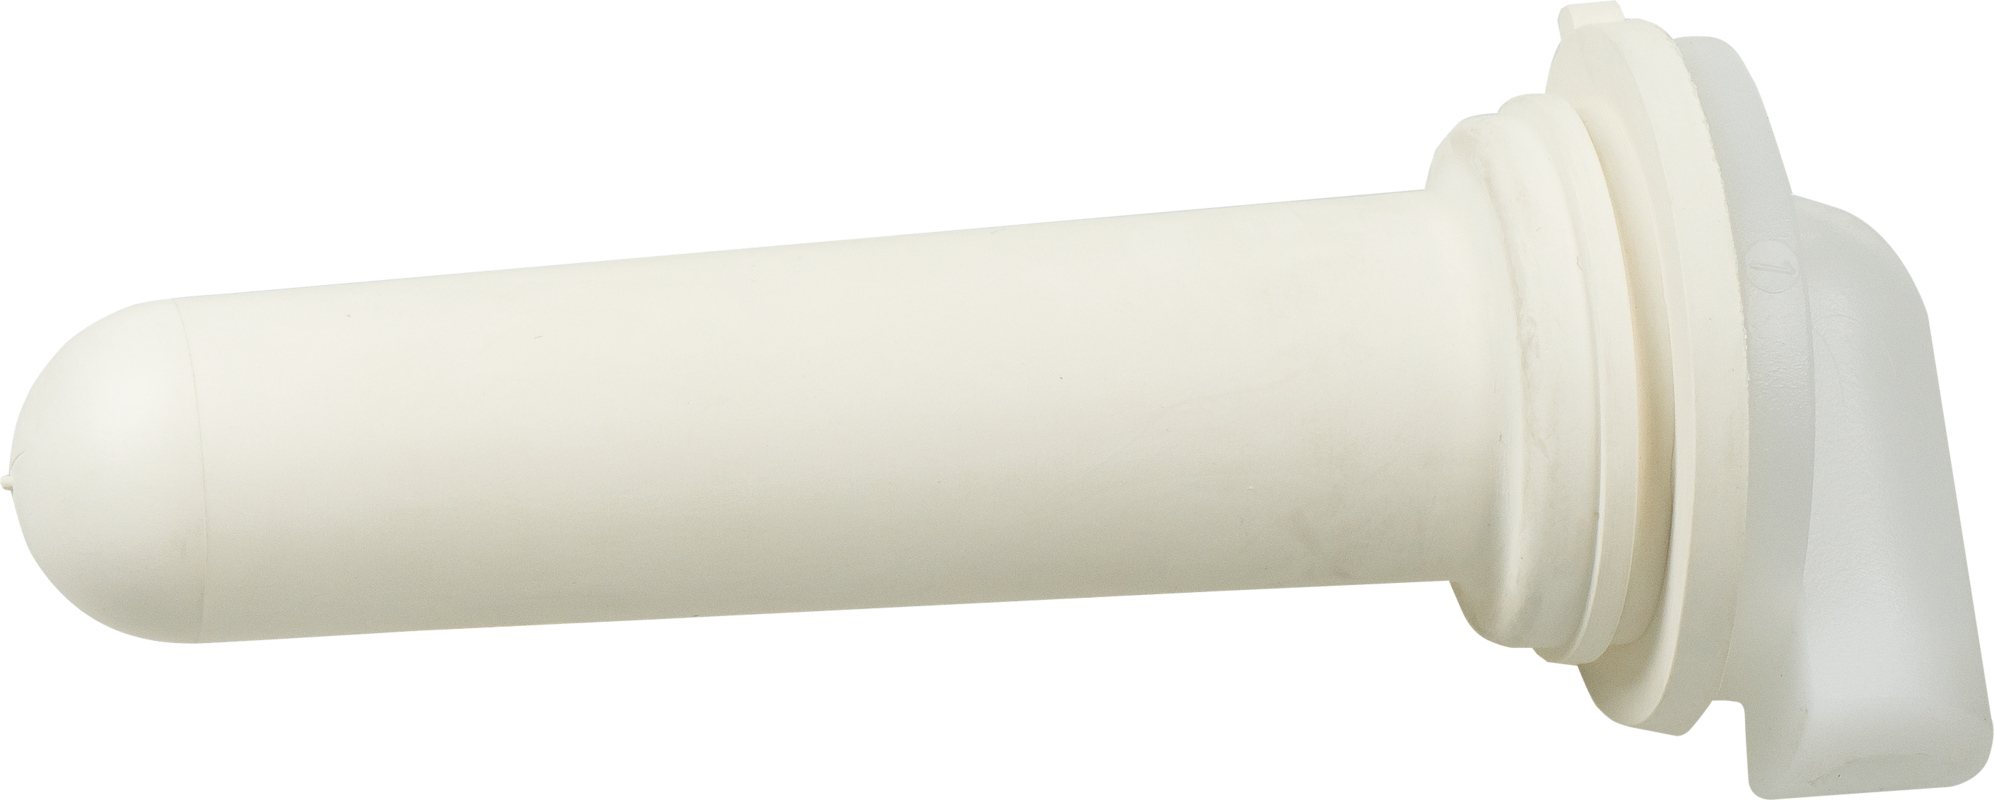 Sauger, hart (weiß) mit 1-Click-Ventil für Nuckel-Tränkeeimer und Kälber-Tränkeflasche Profi